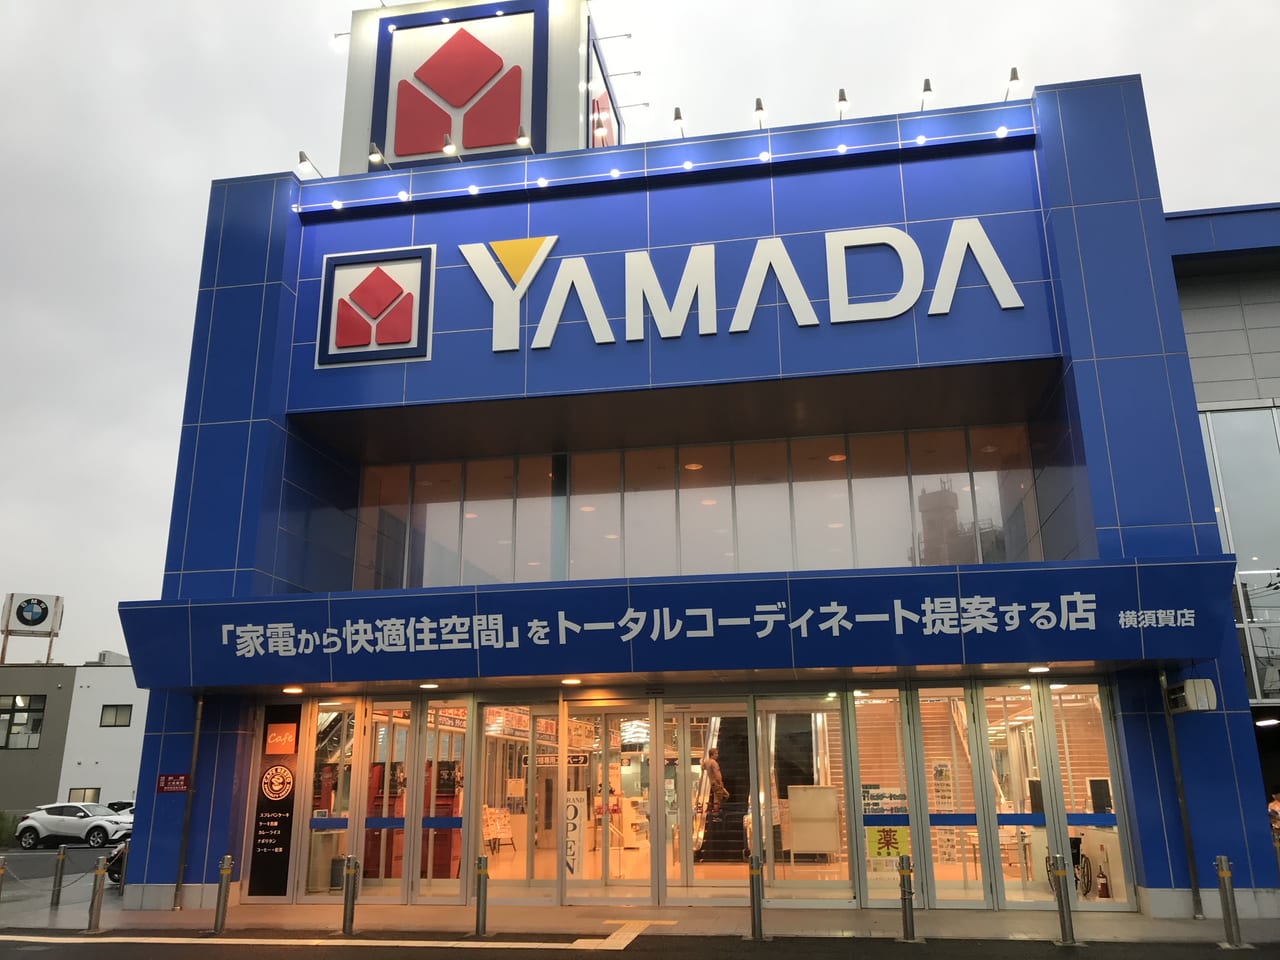 横須賀市 ヤマダ電機横須賀店２階にスフレパンケーキタワーが食べれるカフェが出来ていました 号外net 横須賀市